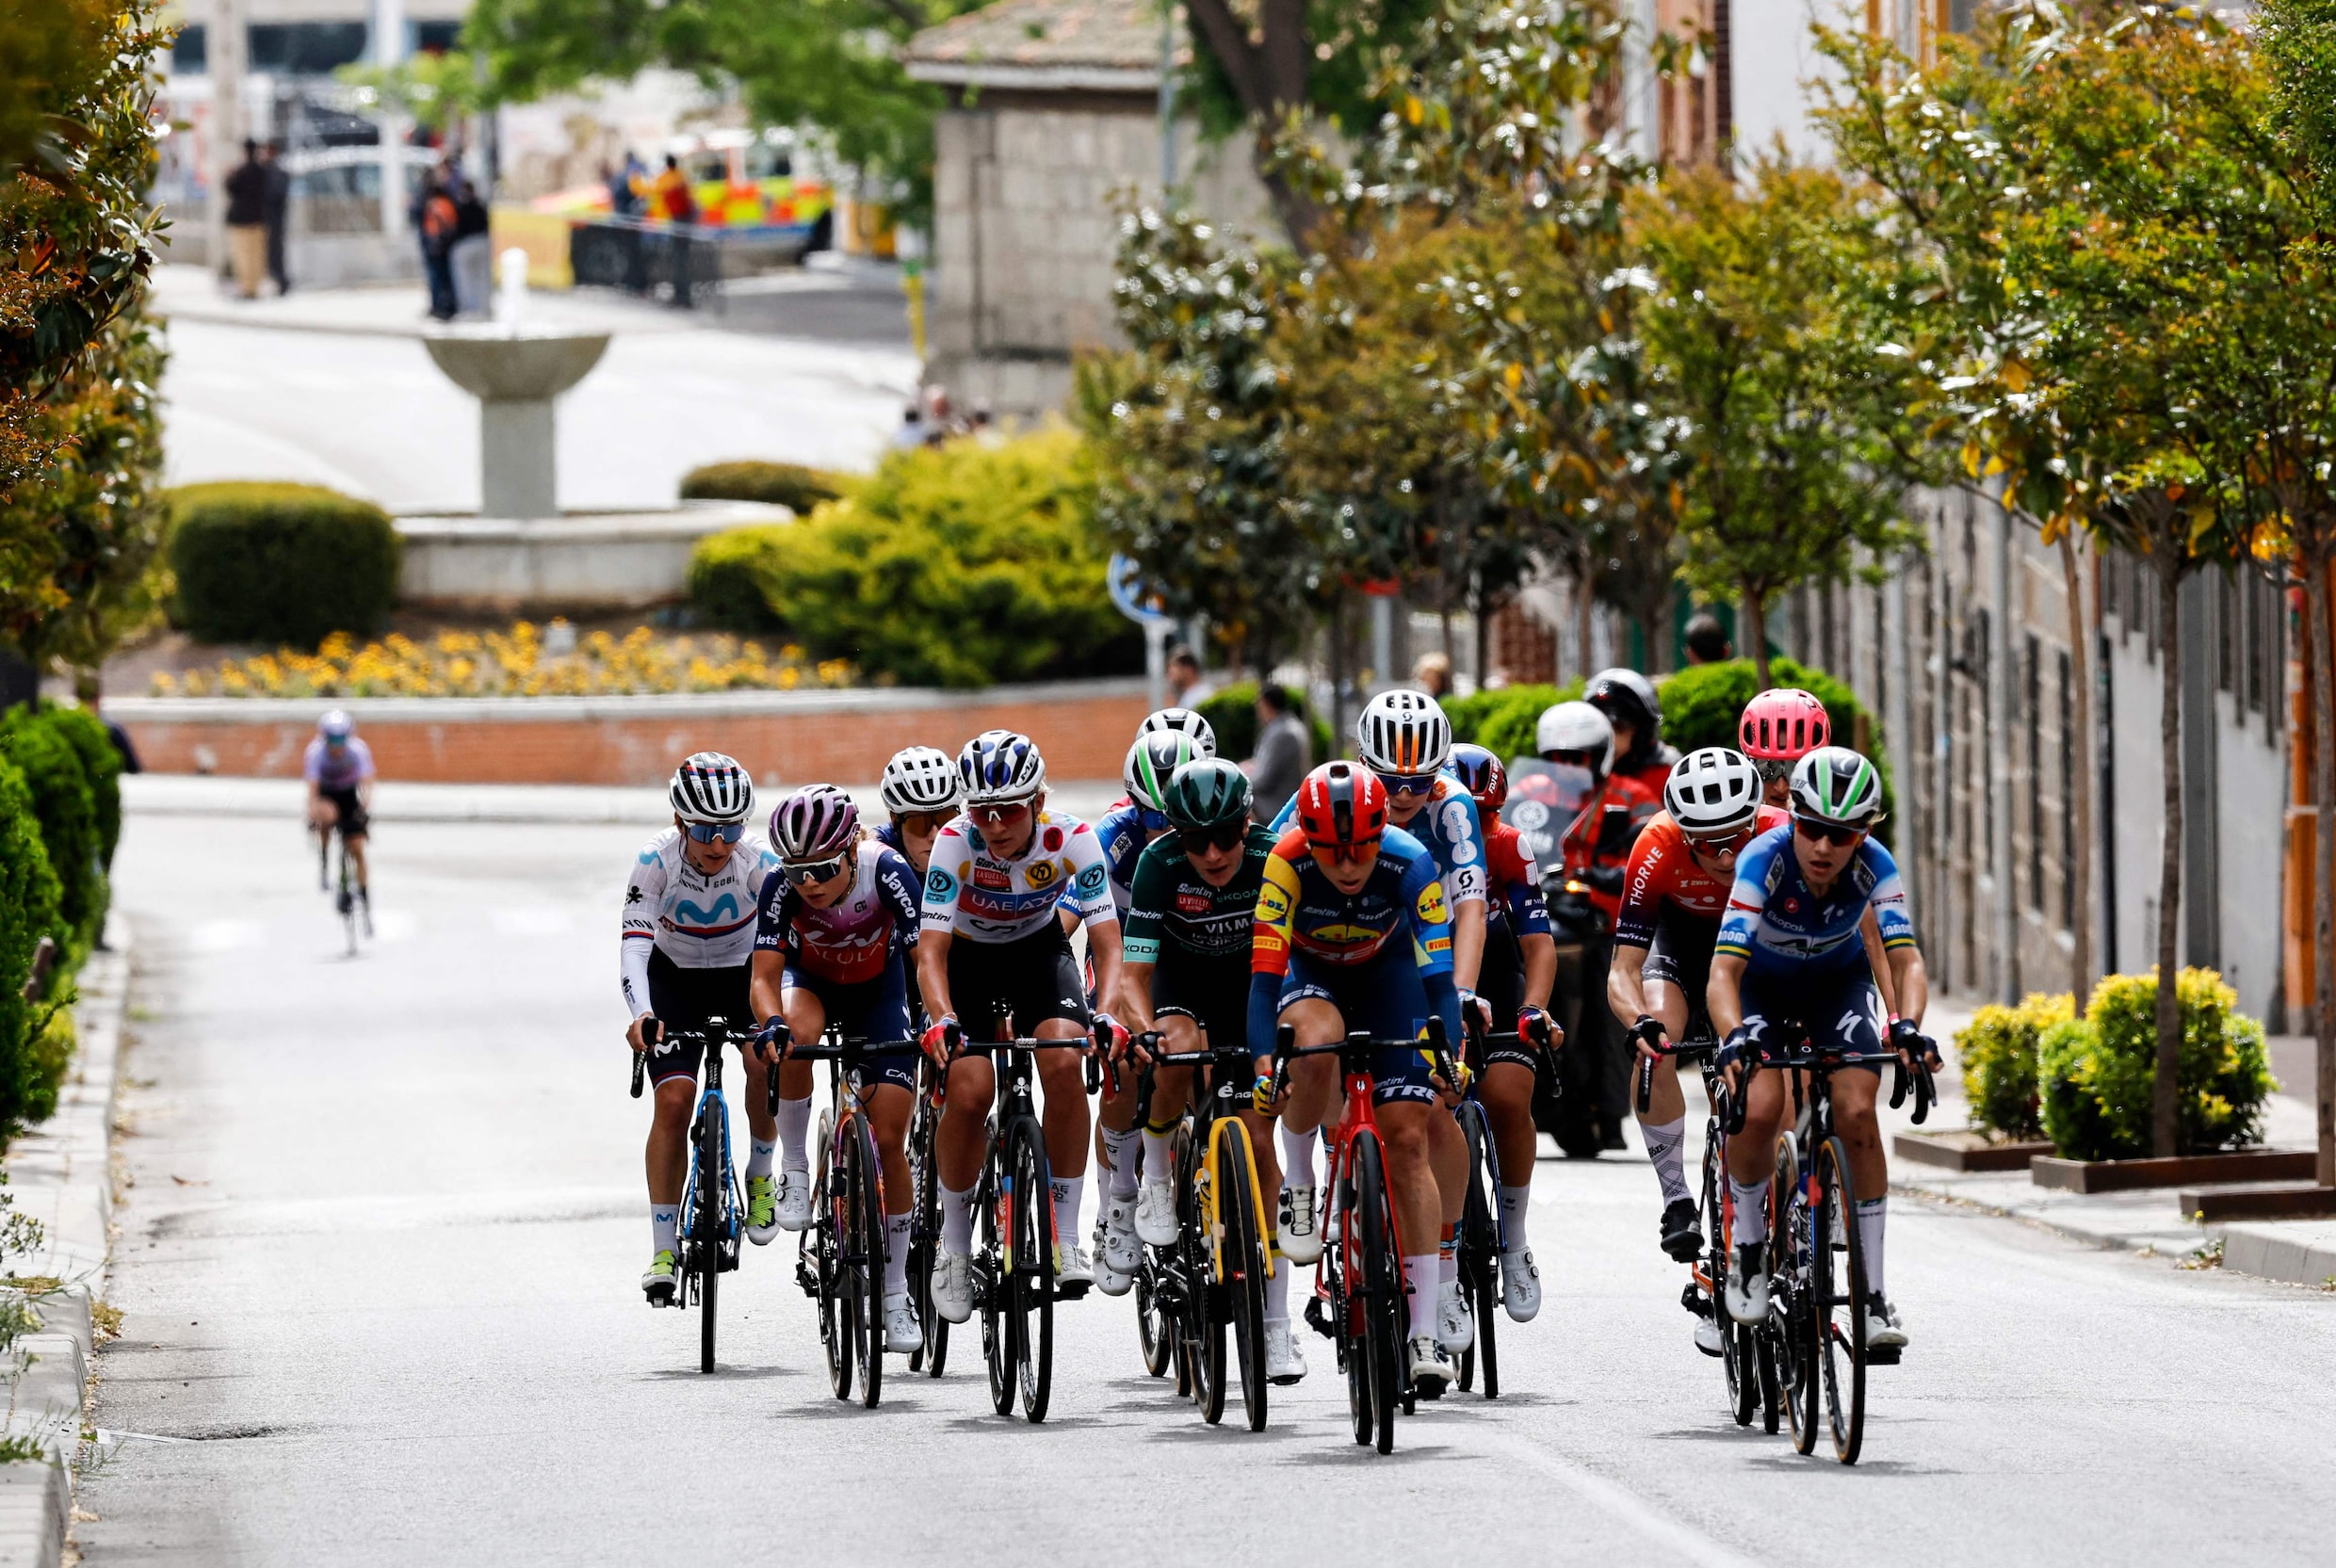 Vollering geeft eindzege Vuelta extra glans met tweede ritzege